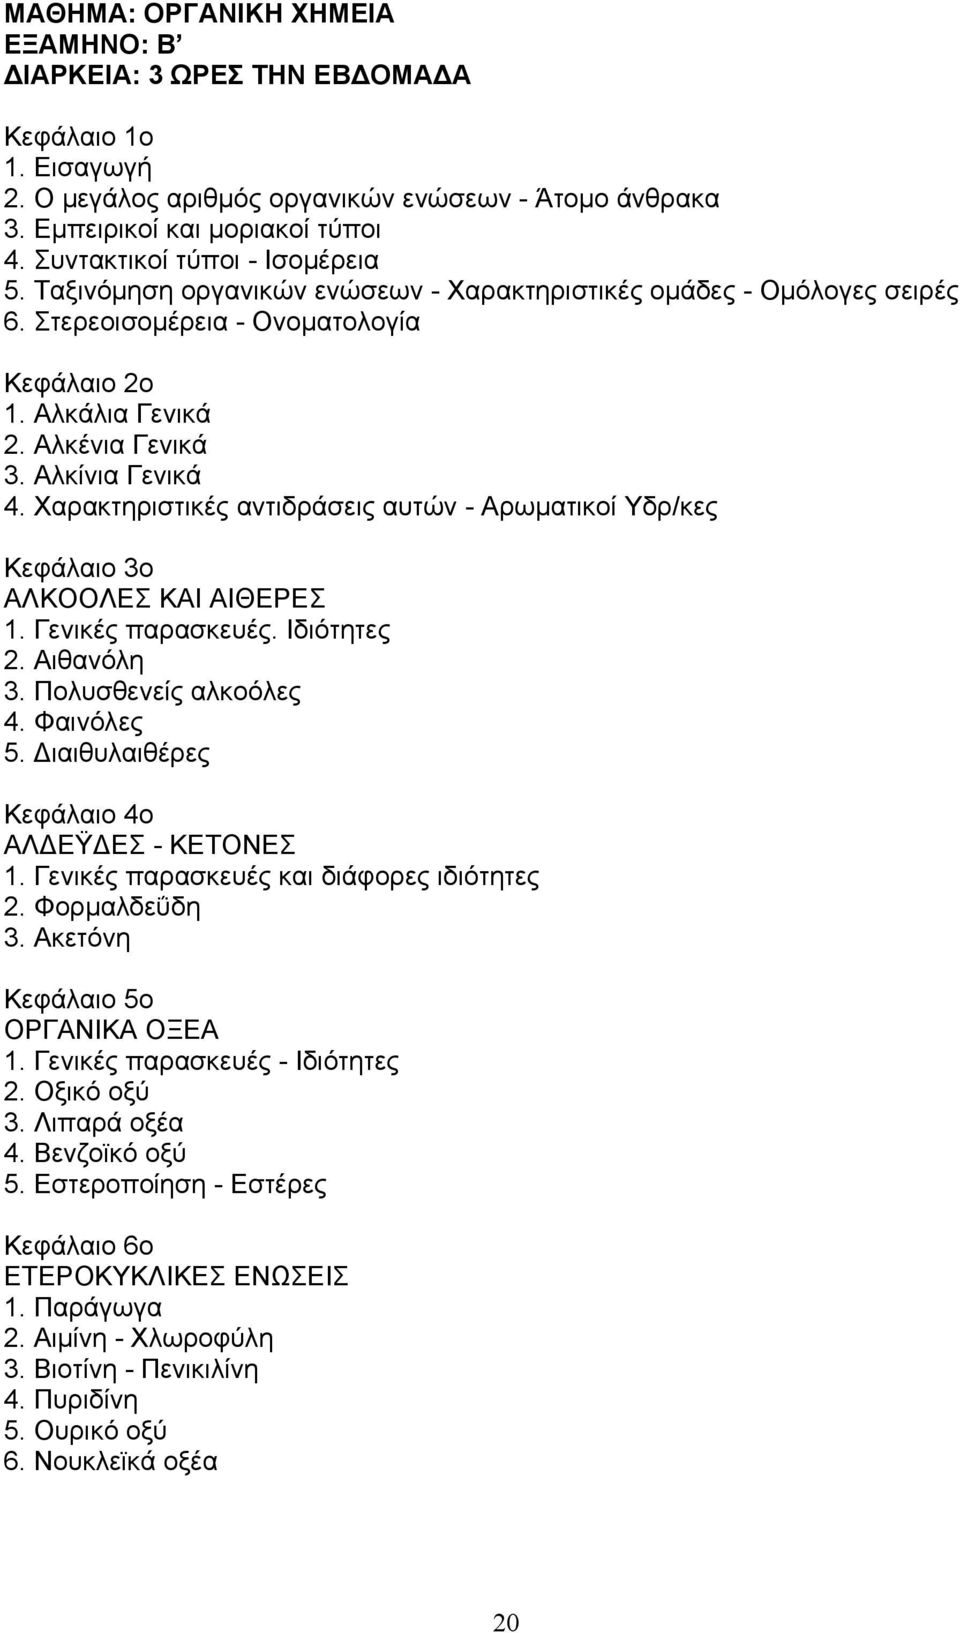 Αλκίνια Γενικά 4. Χαρακτηριστικές αντιδράσεις αυτών - Αρωματικοί Υδρ/κες Κεφάλαιο 3ο ΑΛΚΟΟΛΕΣ ΚΑΙ ΑΙΘΕΡΕΣ 1. Γενικές παρασκευές. Ιδιότητες 2. Αιθανόλη 3. Πολυσθενείς αλκοόλες 4. Φαινόλες 5.